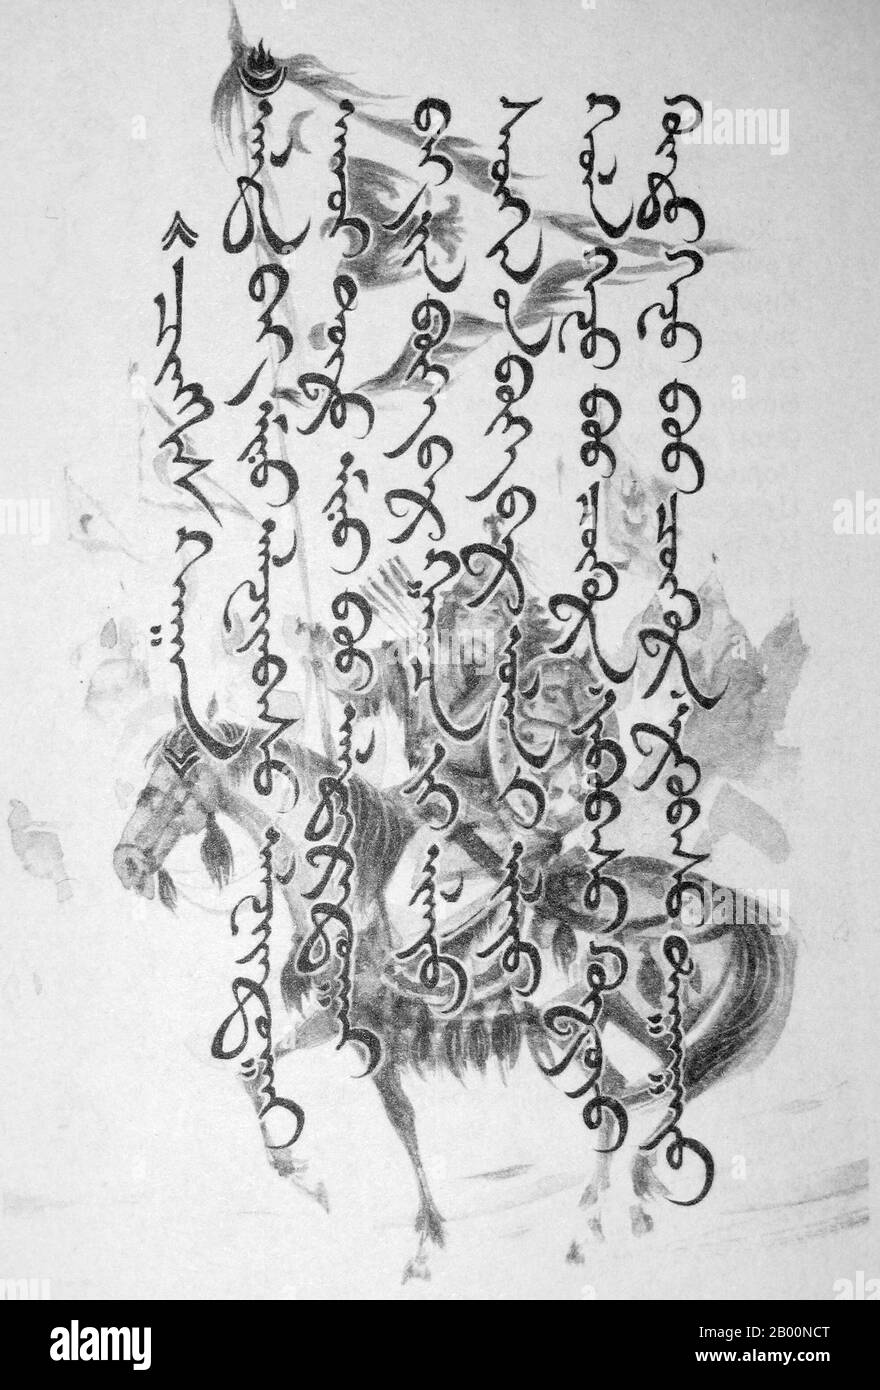 Mongolie: Poème vertical mongol avec dessin de Chinggis Khan en arrière-plan. Un poème attribué à Chinggis Khan (1162-1227). La langue mongole est la langue officielle de la Mongolie et le membre le plus connu de la famille mongole. Le nombre d'orateurs dans tous ses dialectes pourrait être de 5.2 millions, y compris la grande majorité des résidents de Mongolie et de nombreux résidents mongoles de la région autonome de Mongolie intérieure de Chine. En Mongolie, le dialecte Khalkha, écrit en cyrillique (et parfois en latin pour les réseaux sociaux), est prédominant. Banque D'Images